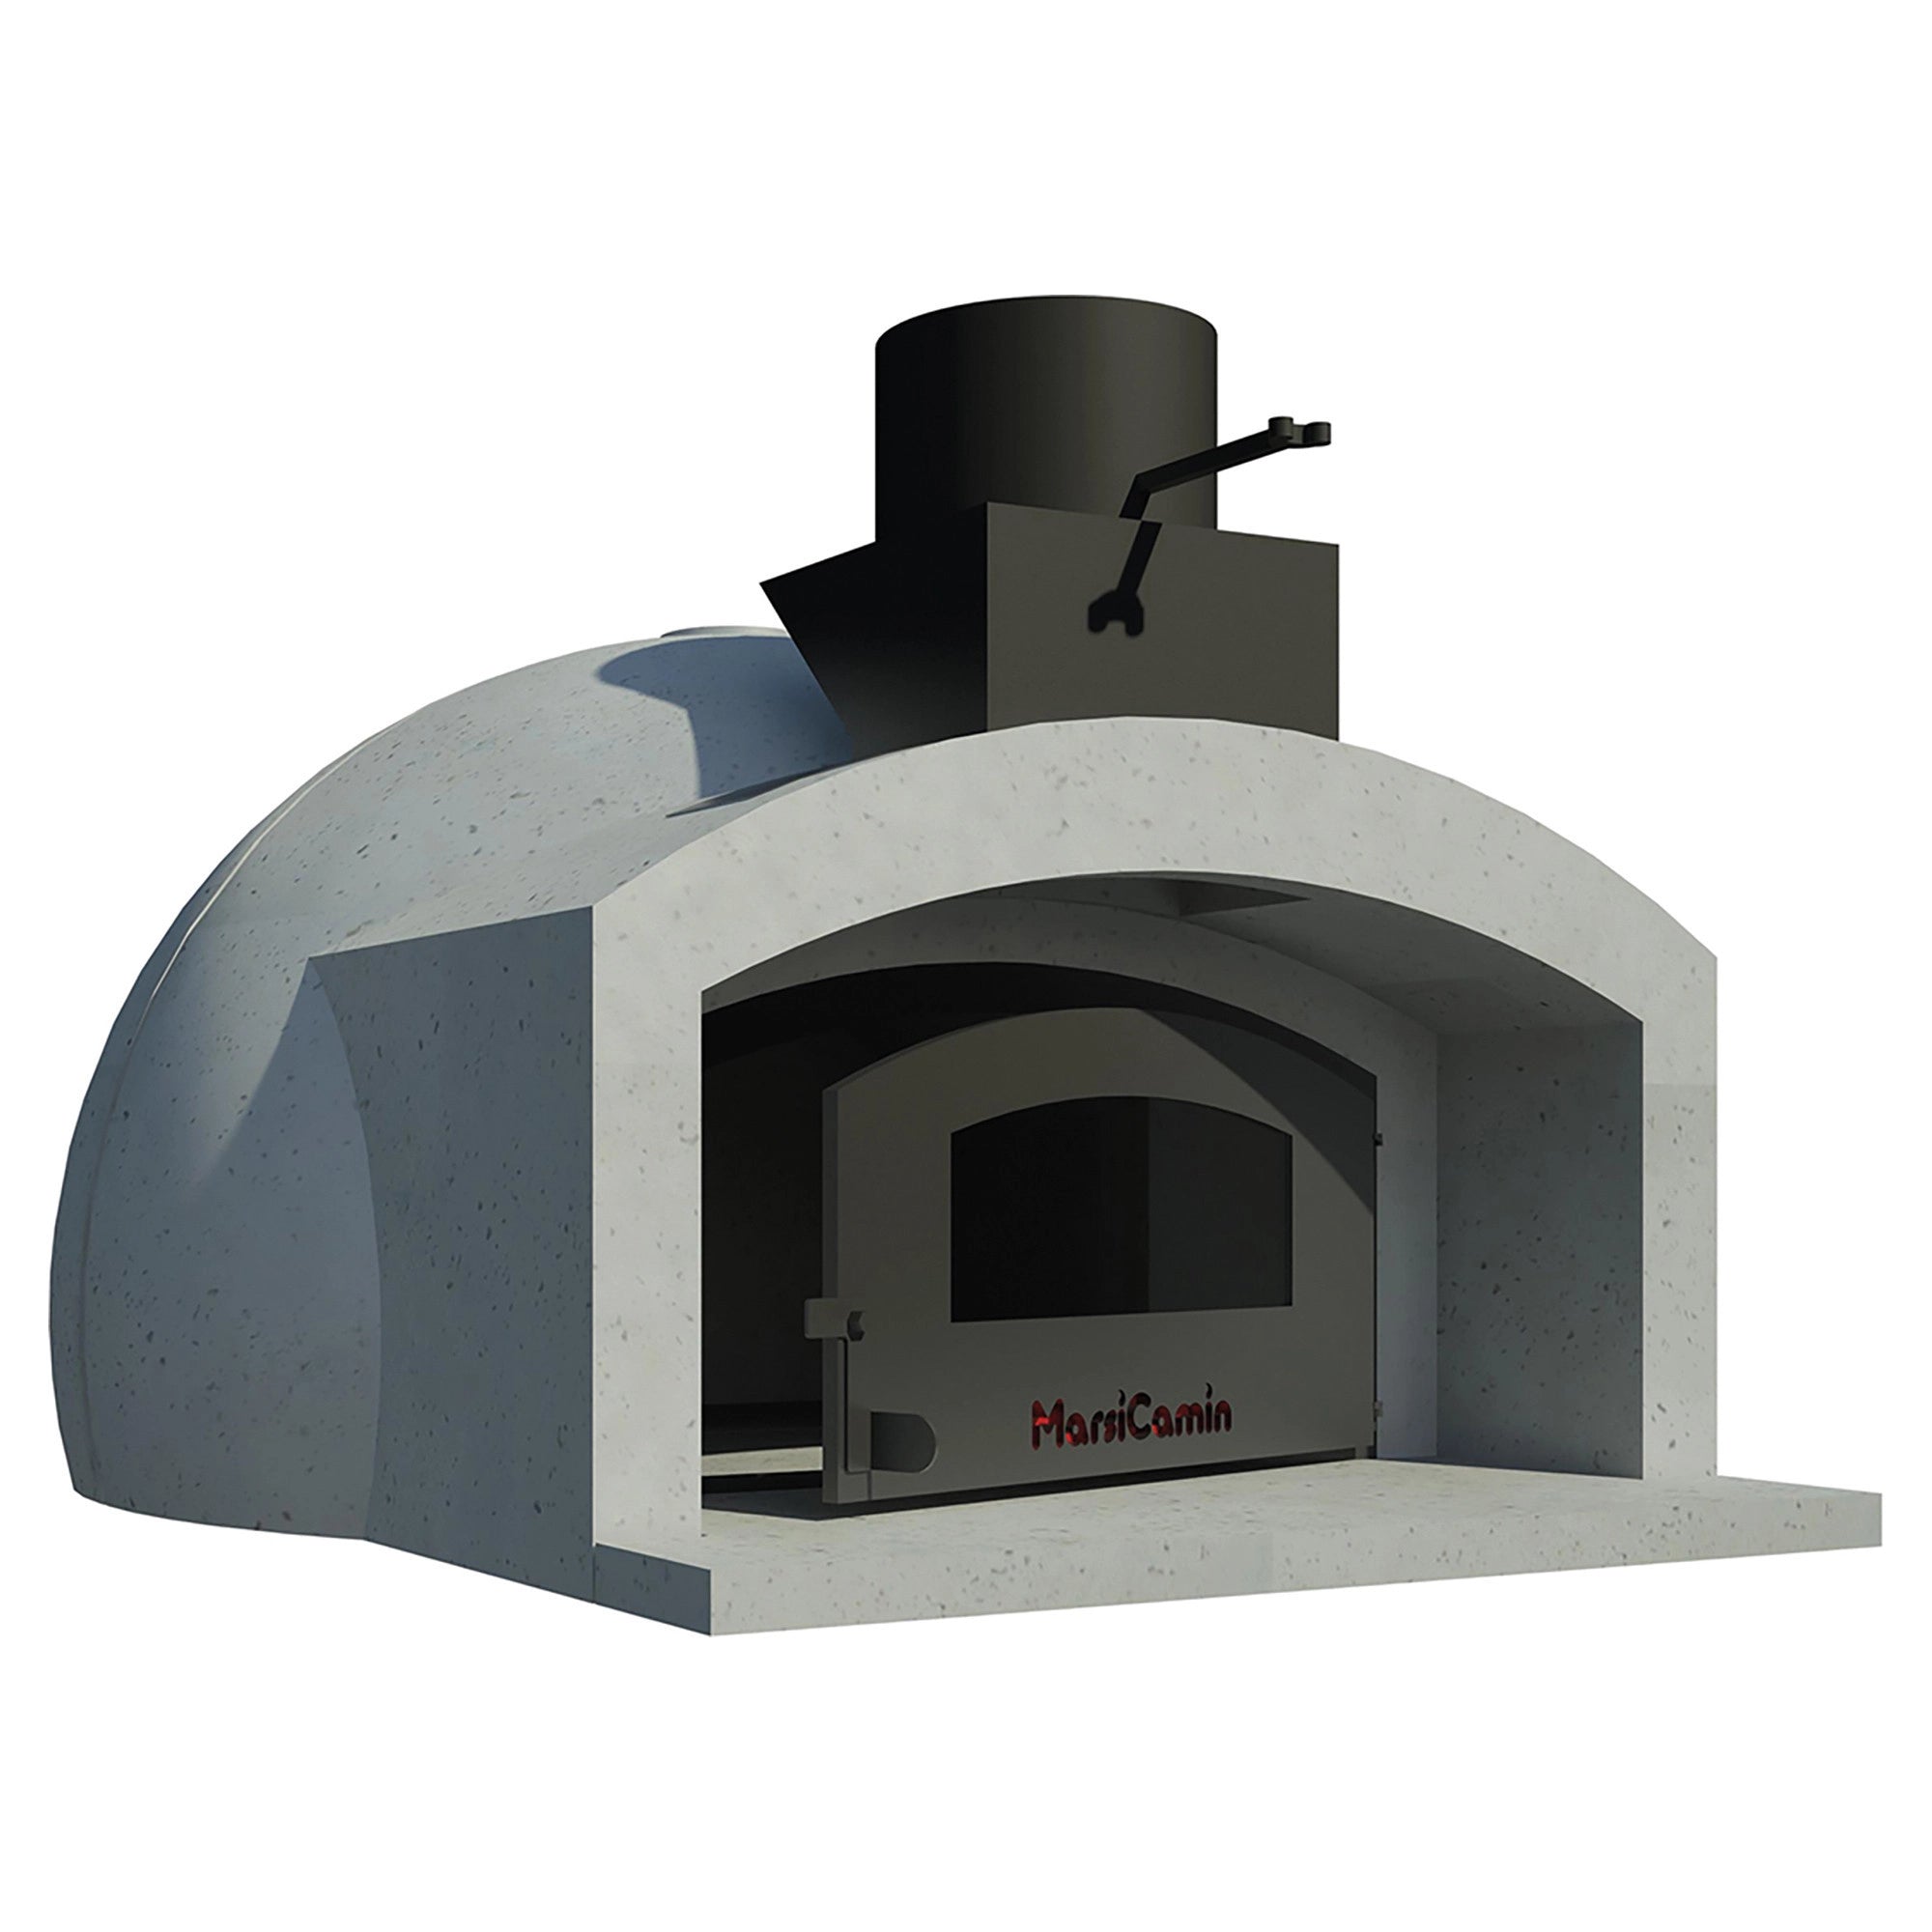 TECNOMAT Masonry ovens